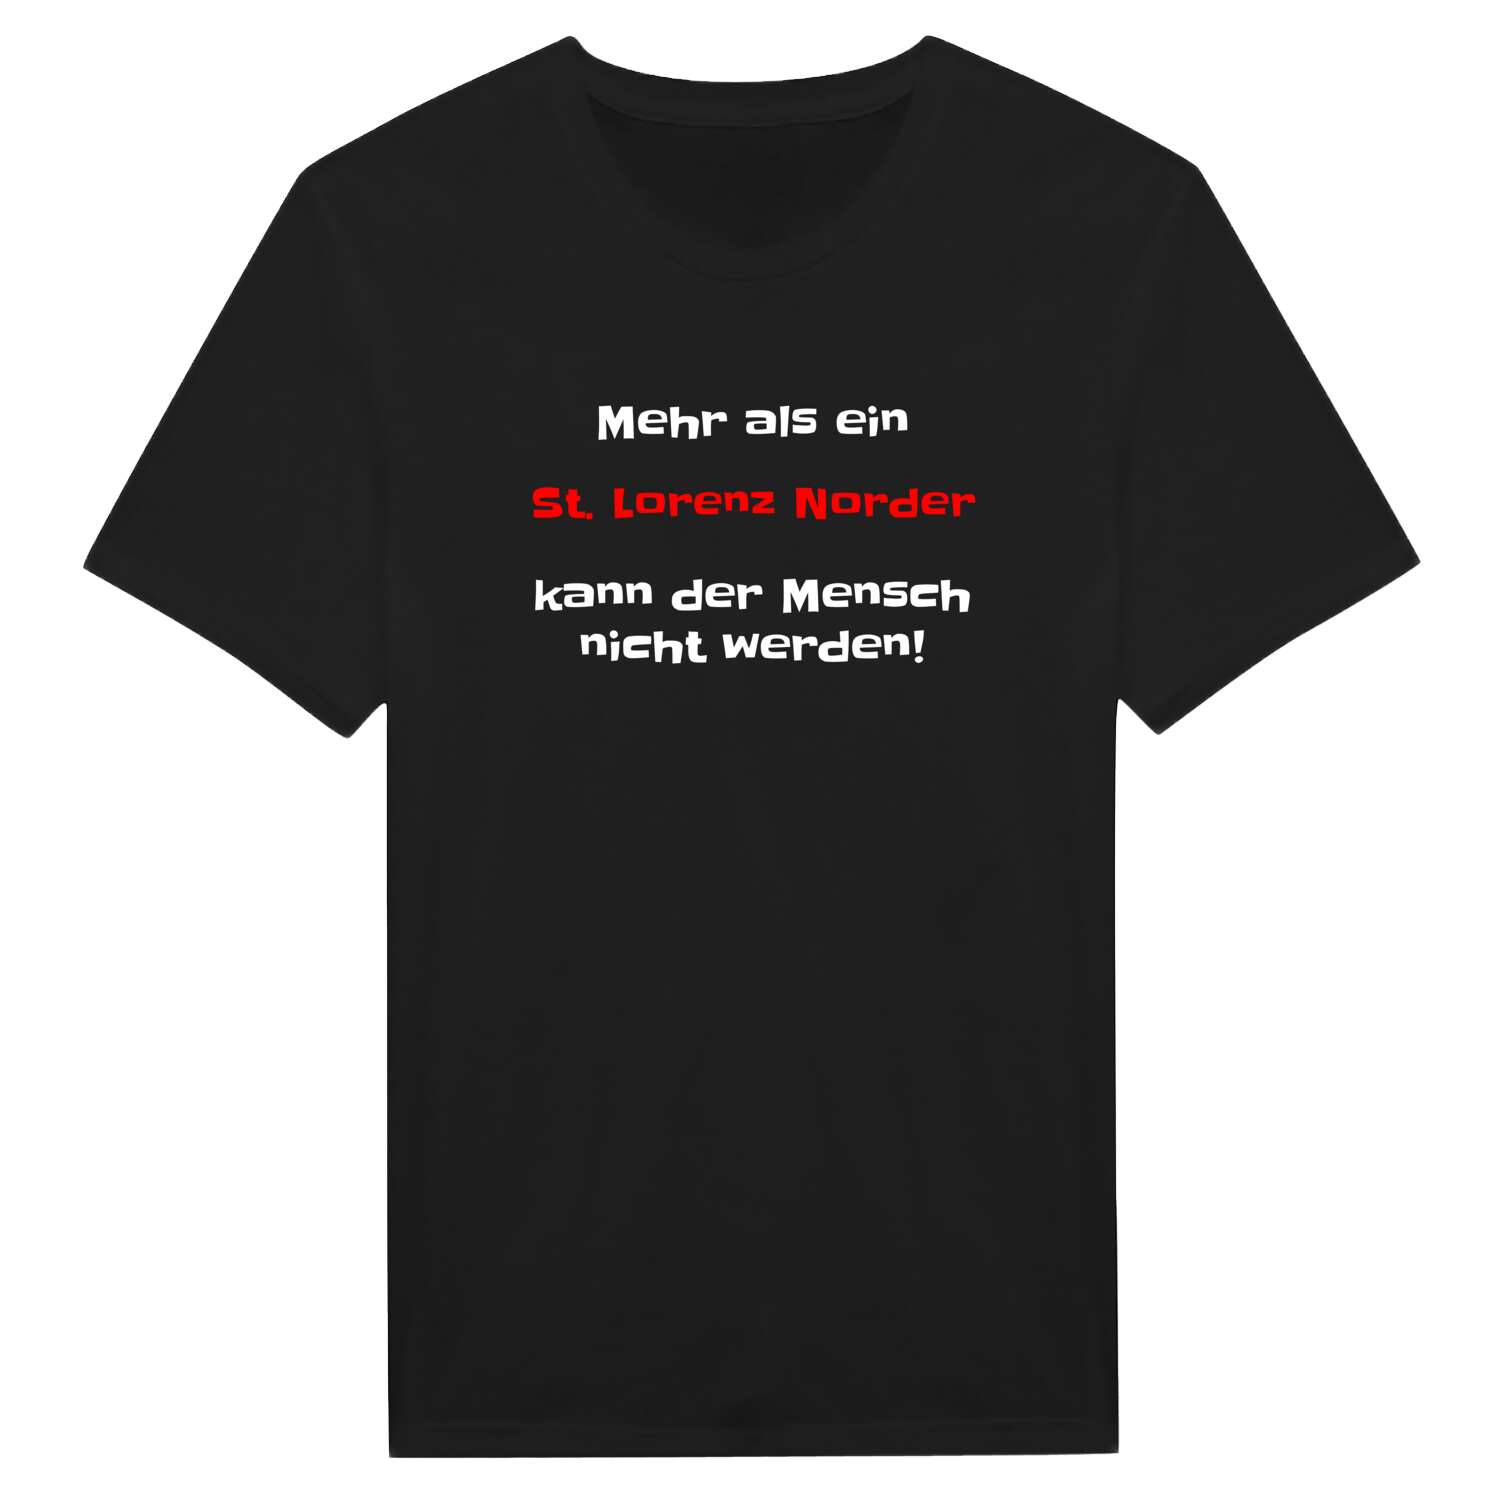 St. Lorenz Nord T-Shirt »Mehr als ein«